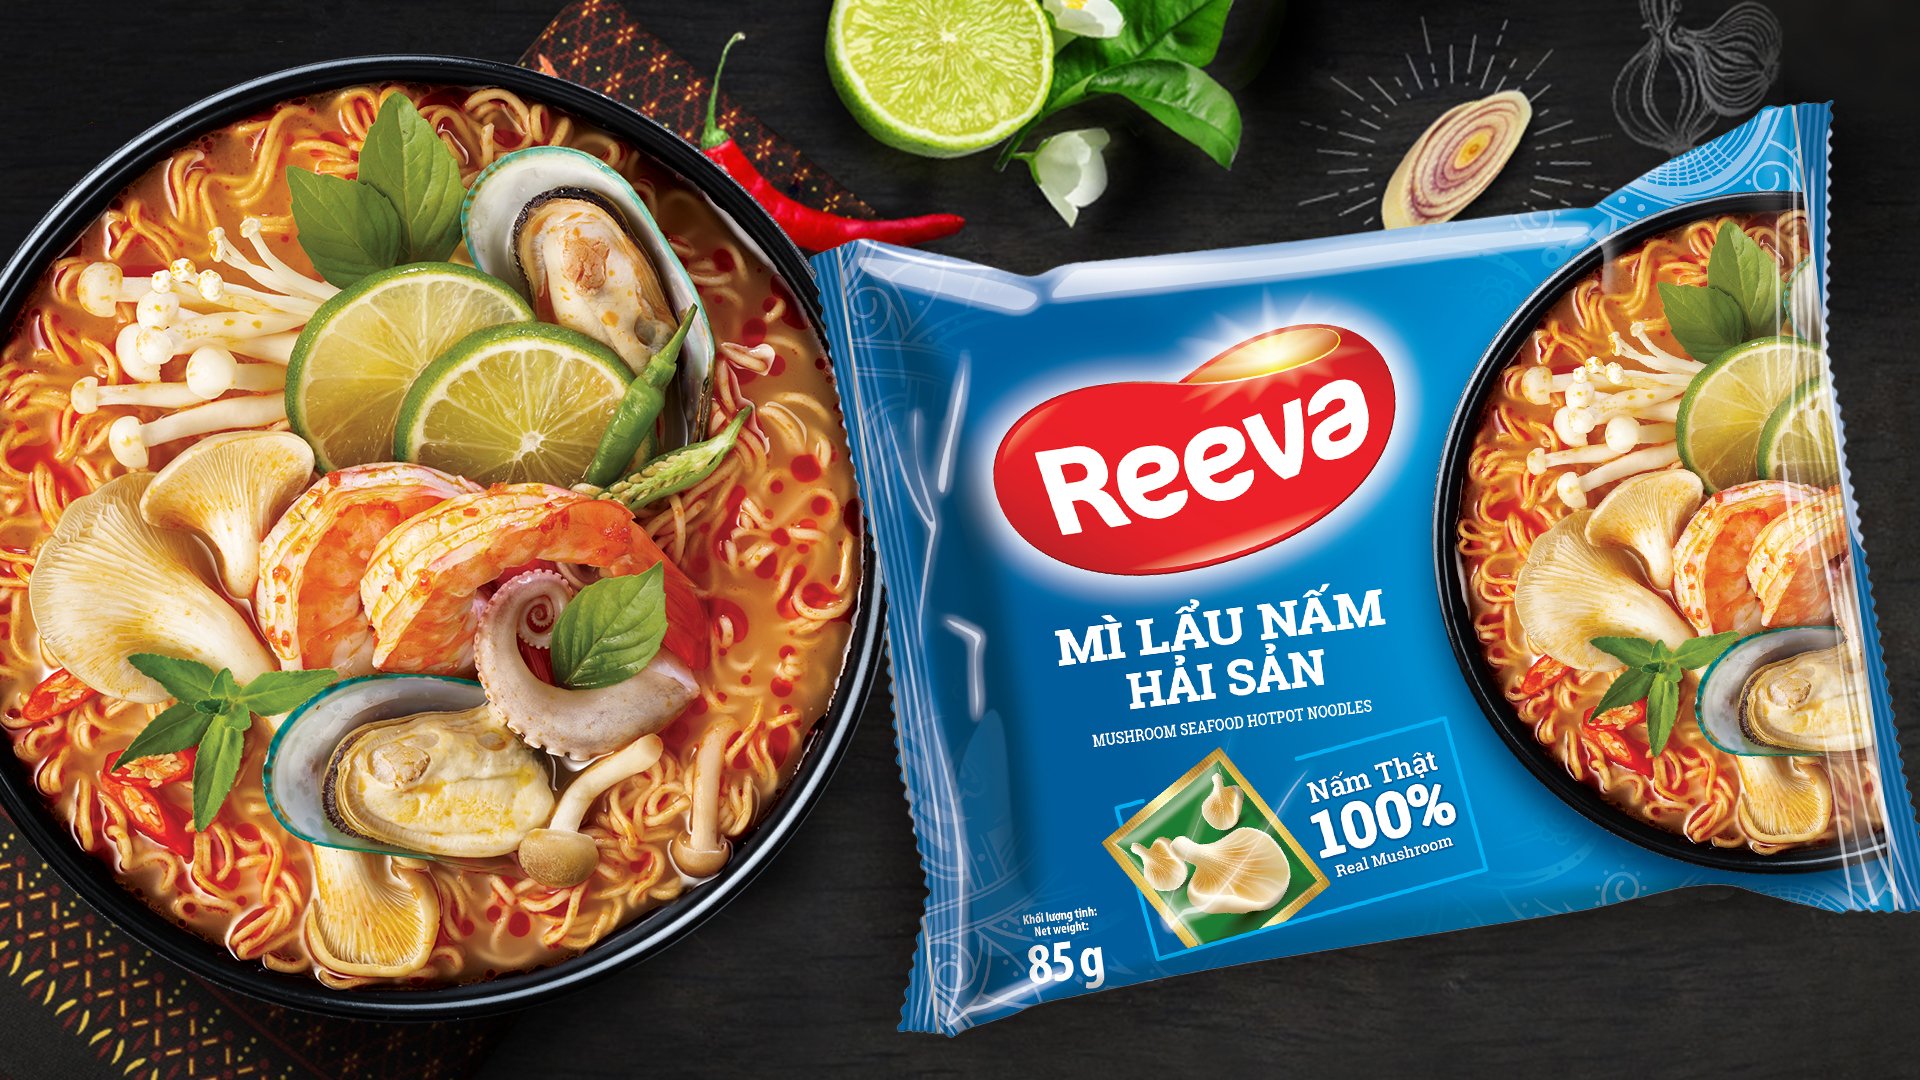 ReevaLand - Thế giới mì cao cấp Reeva cho bạn trải nghiệm ăn mì có topping cực ngon, cực đã - Ảnh 5.